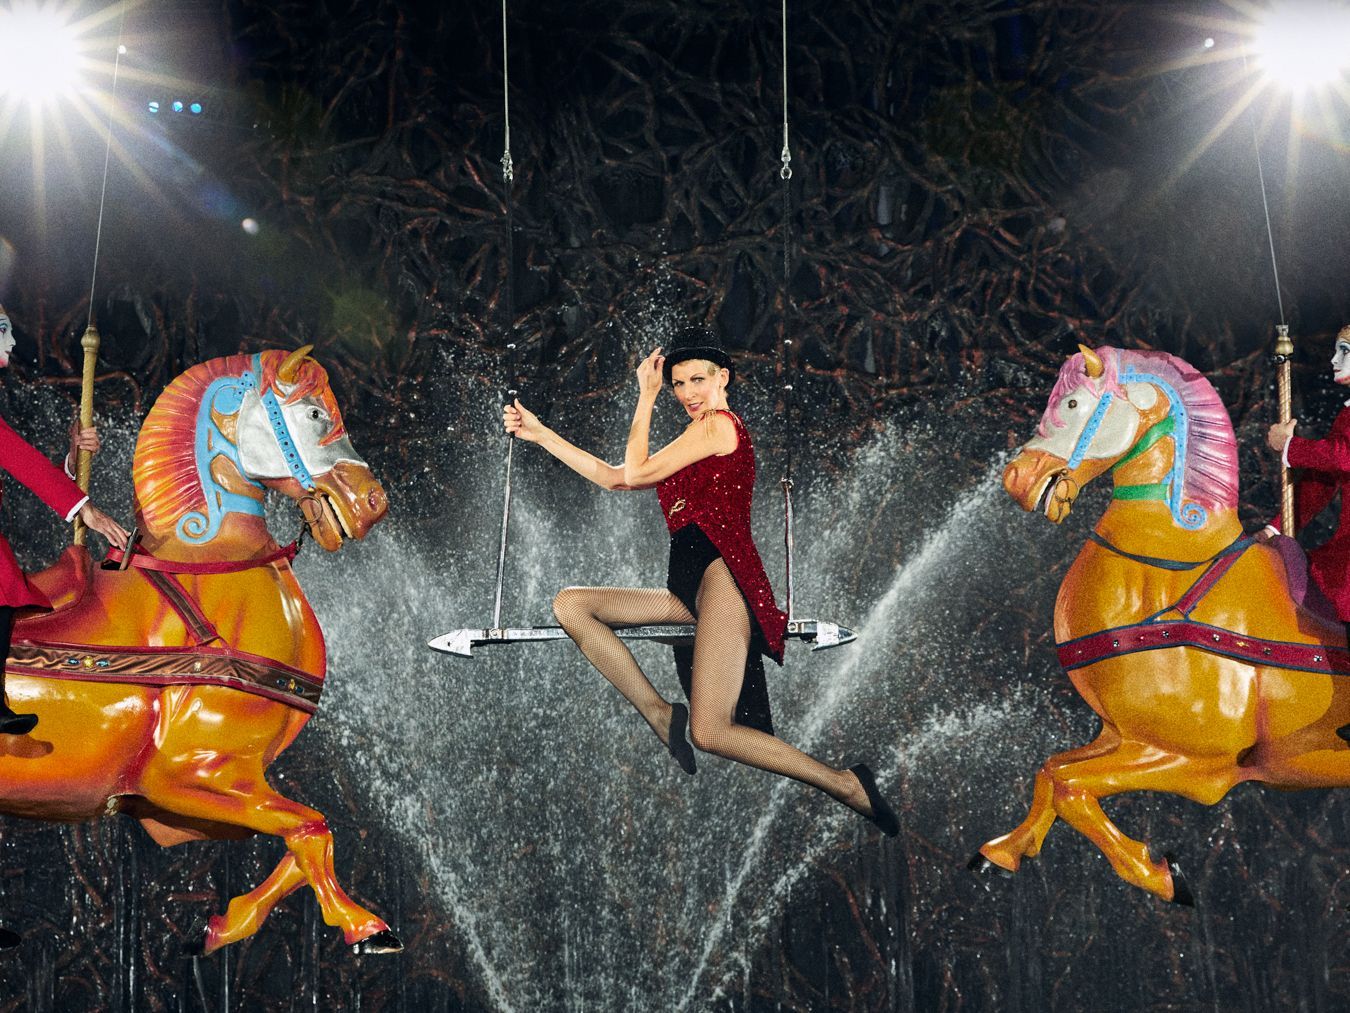 Nach anfänglichen Bedenken über die Höhe des Trapezes kann Nicole mit vielen schönen Posen von sich überzeugen und erhält für ihre Leistung beim "Cirque du Soleil"-Fotoshooting gute Kritik von Heidi Klum: "Ich finde, du hast super viel angeboten."